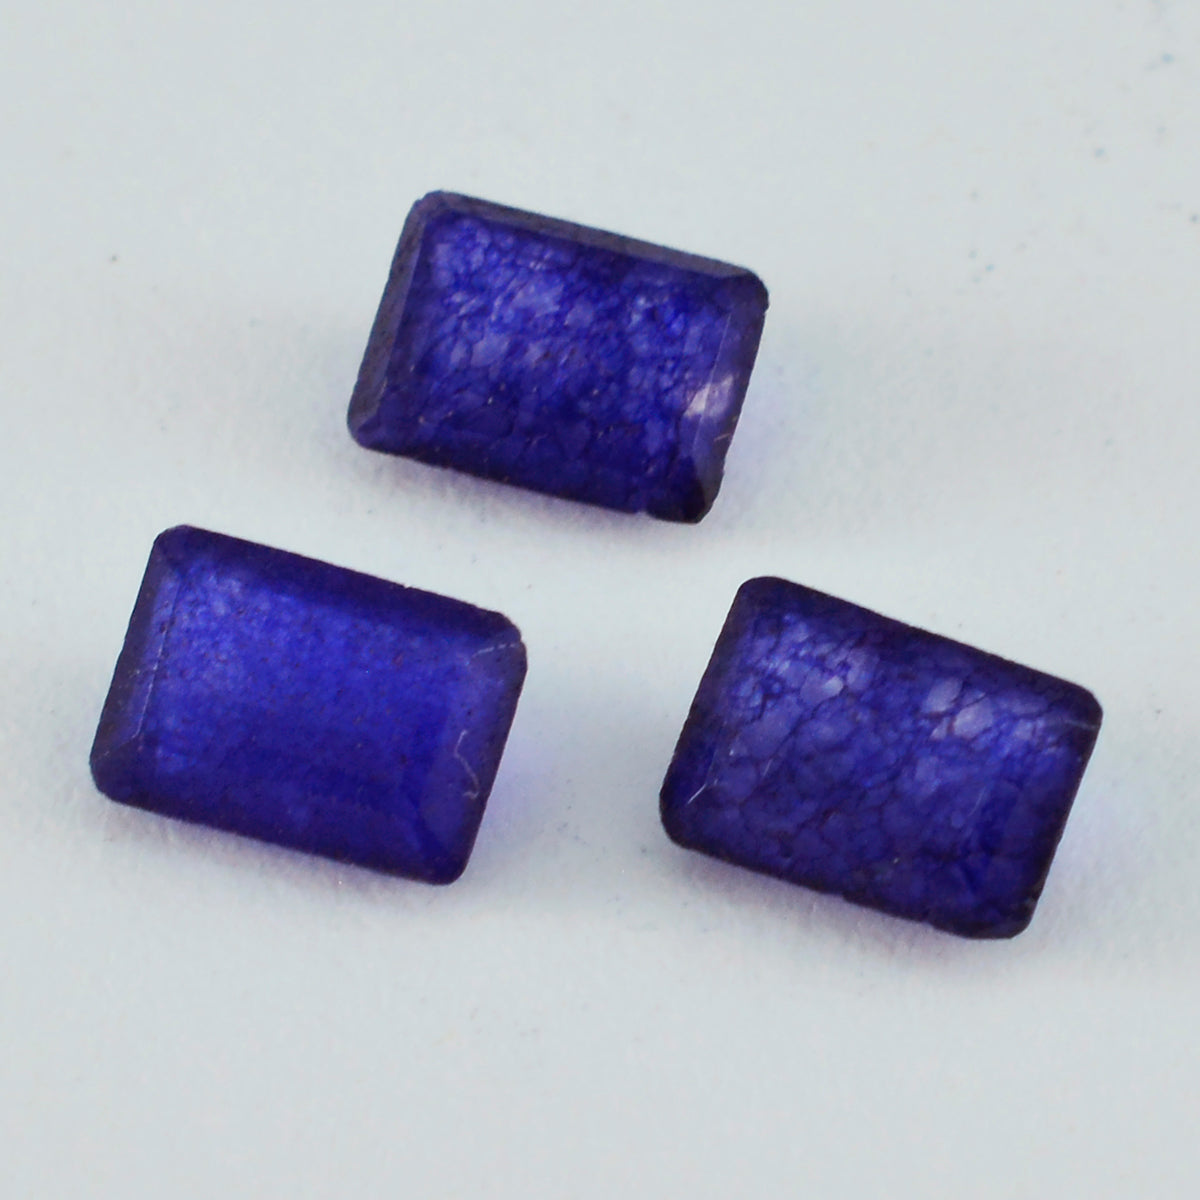 riyogems 1 st naturlig blå jaspis fasetterad 7x9 mm oktagonform snygg kvalitetspärla